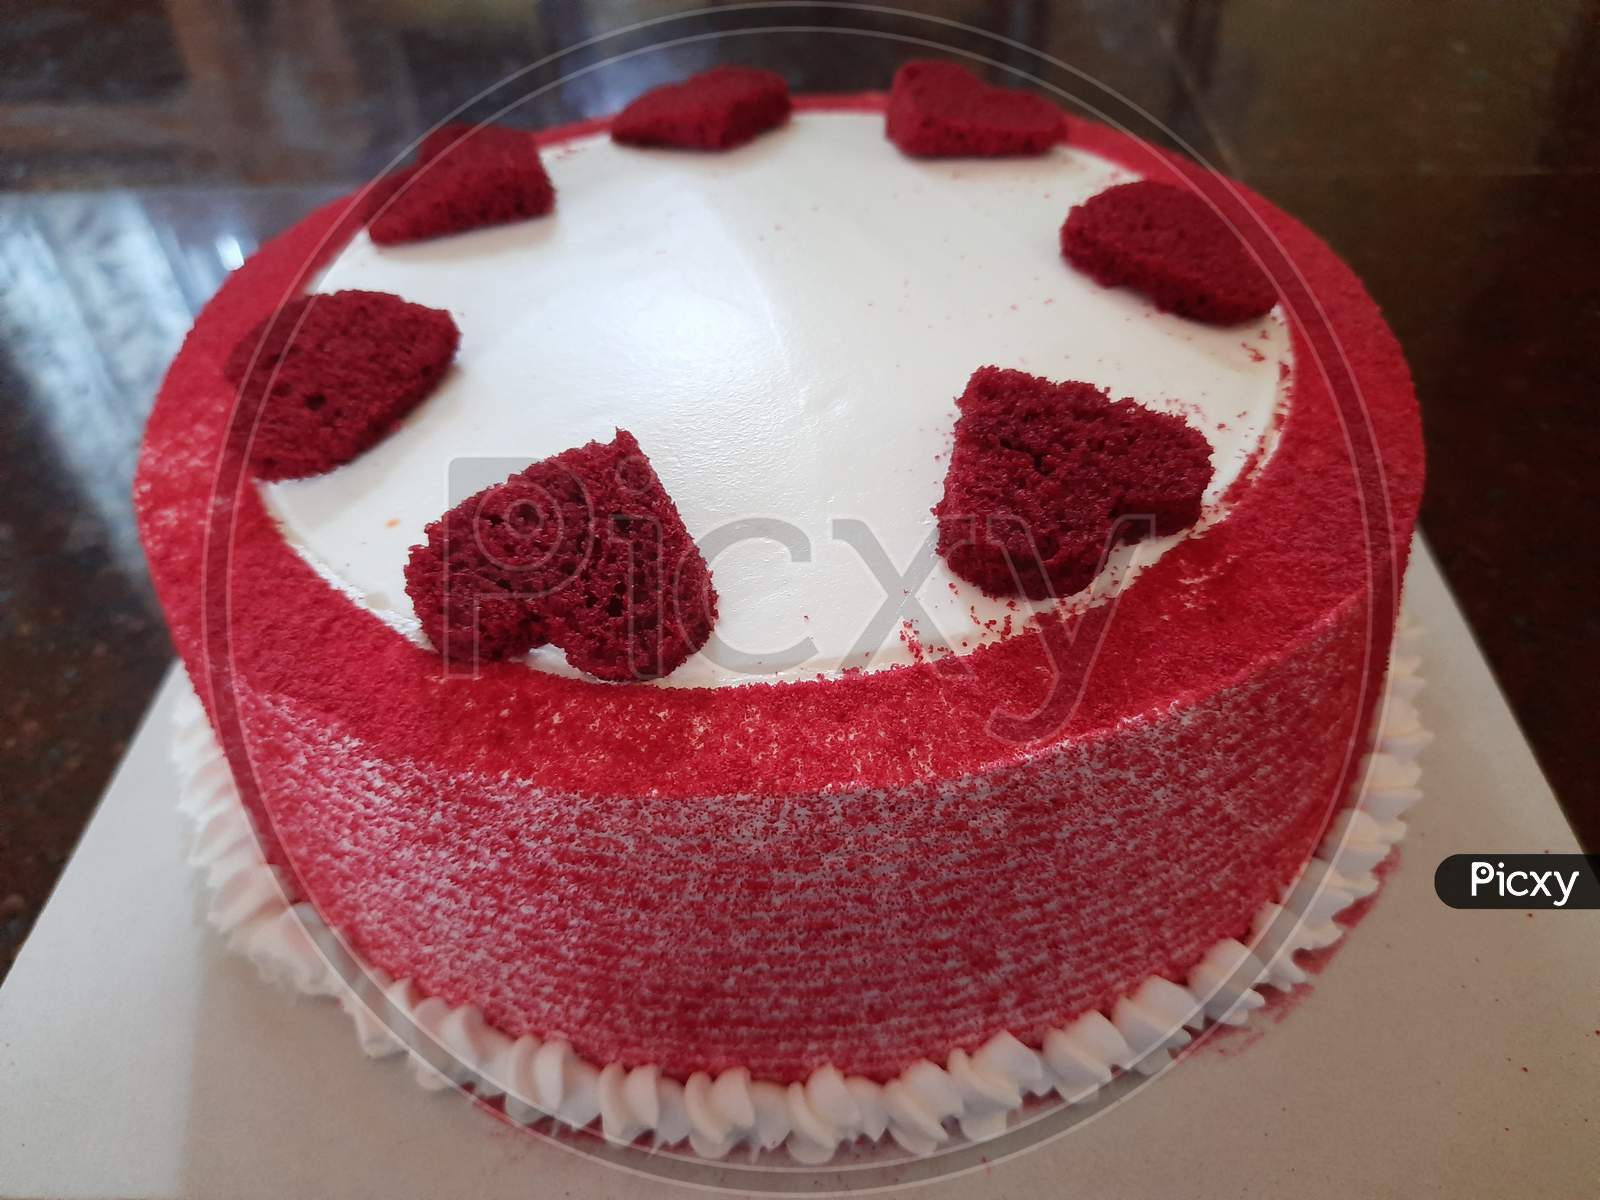 Homemade Heart designed Red velvet cake for birthday